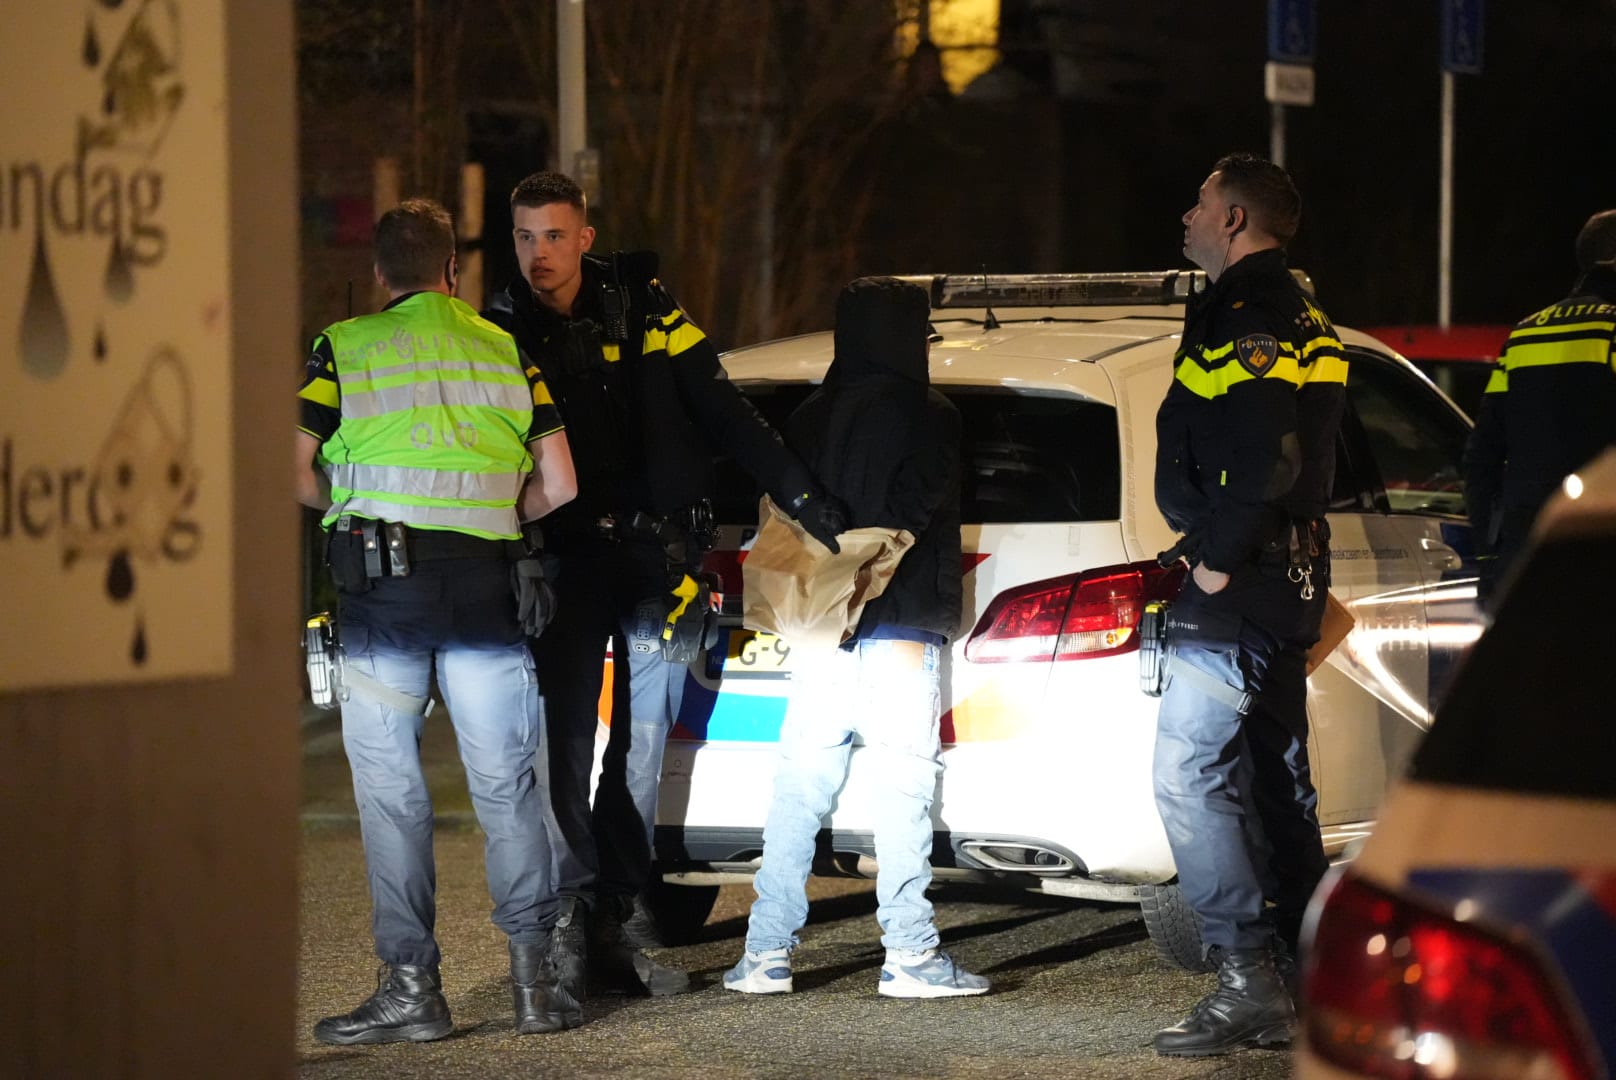 ‘Steekincident in Arnhem’: gewonde en twee aanhoudingen